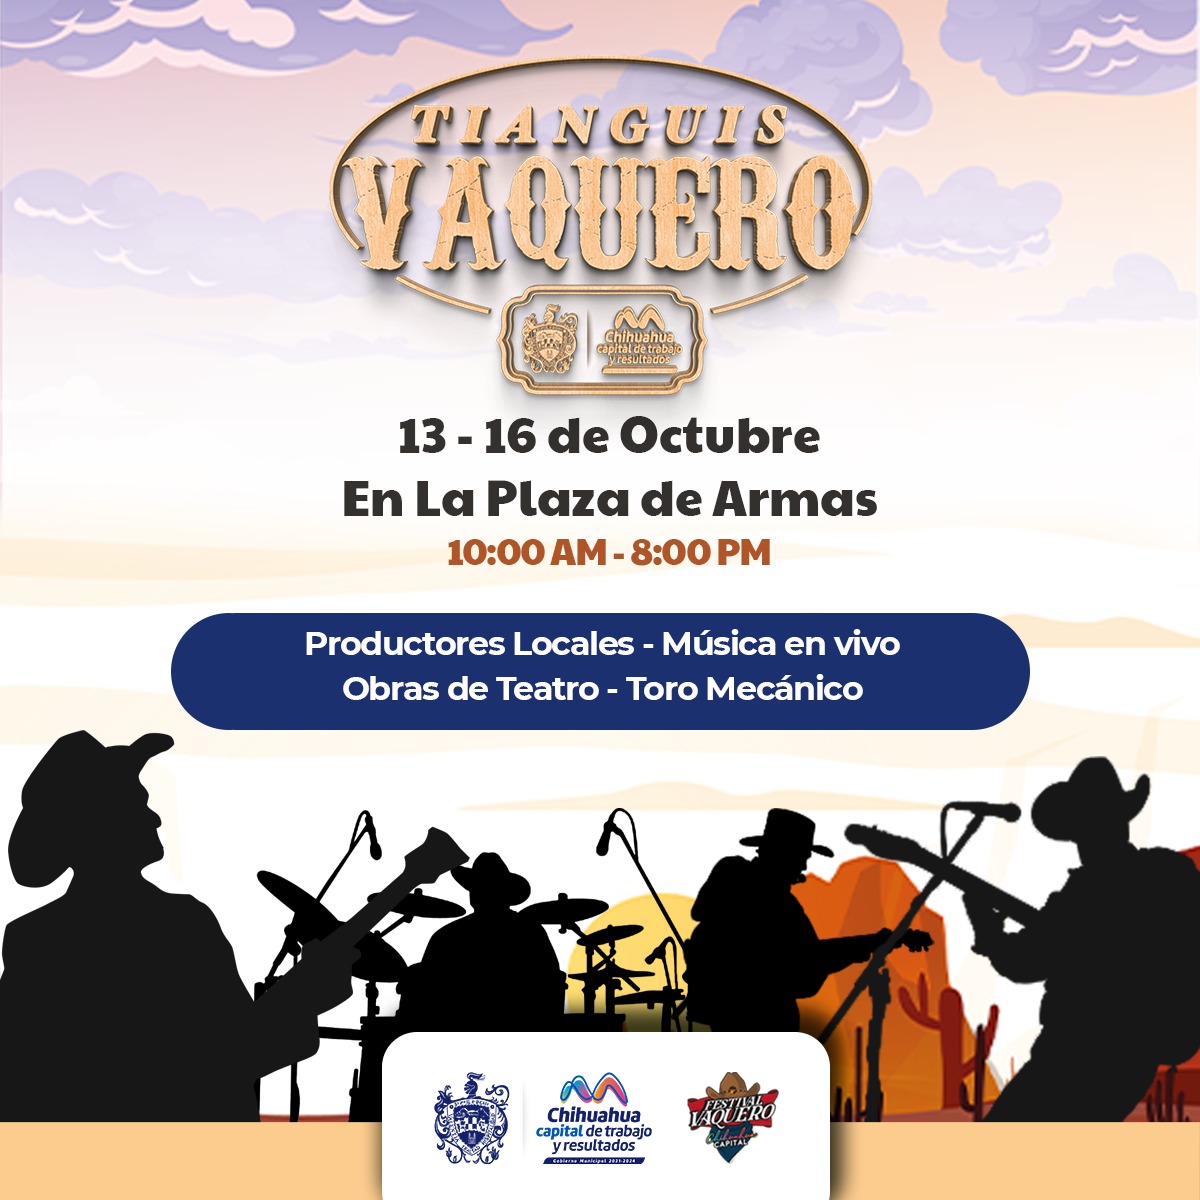 Invitan al Tianguis Vaquero del 13 al 16 de octubre en Plaza de Armas